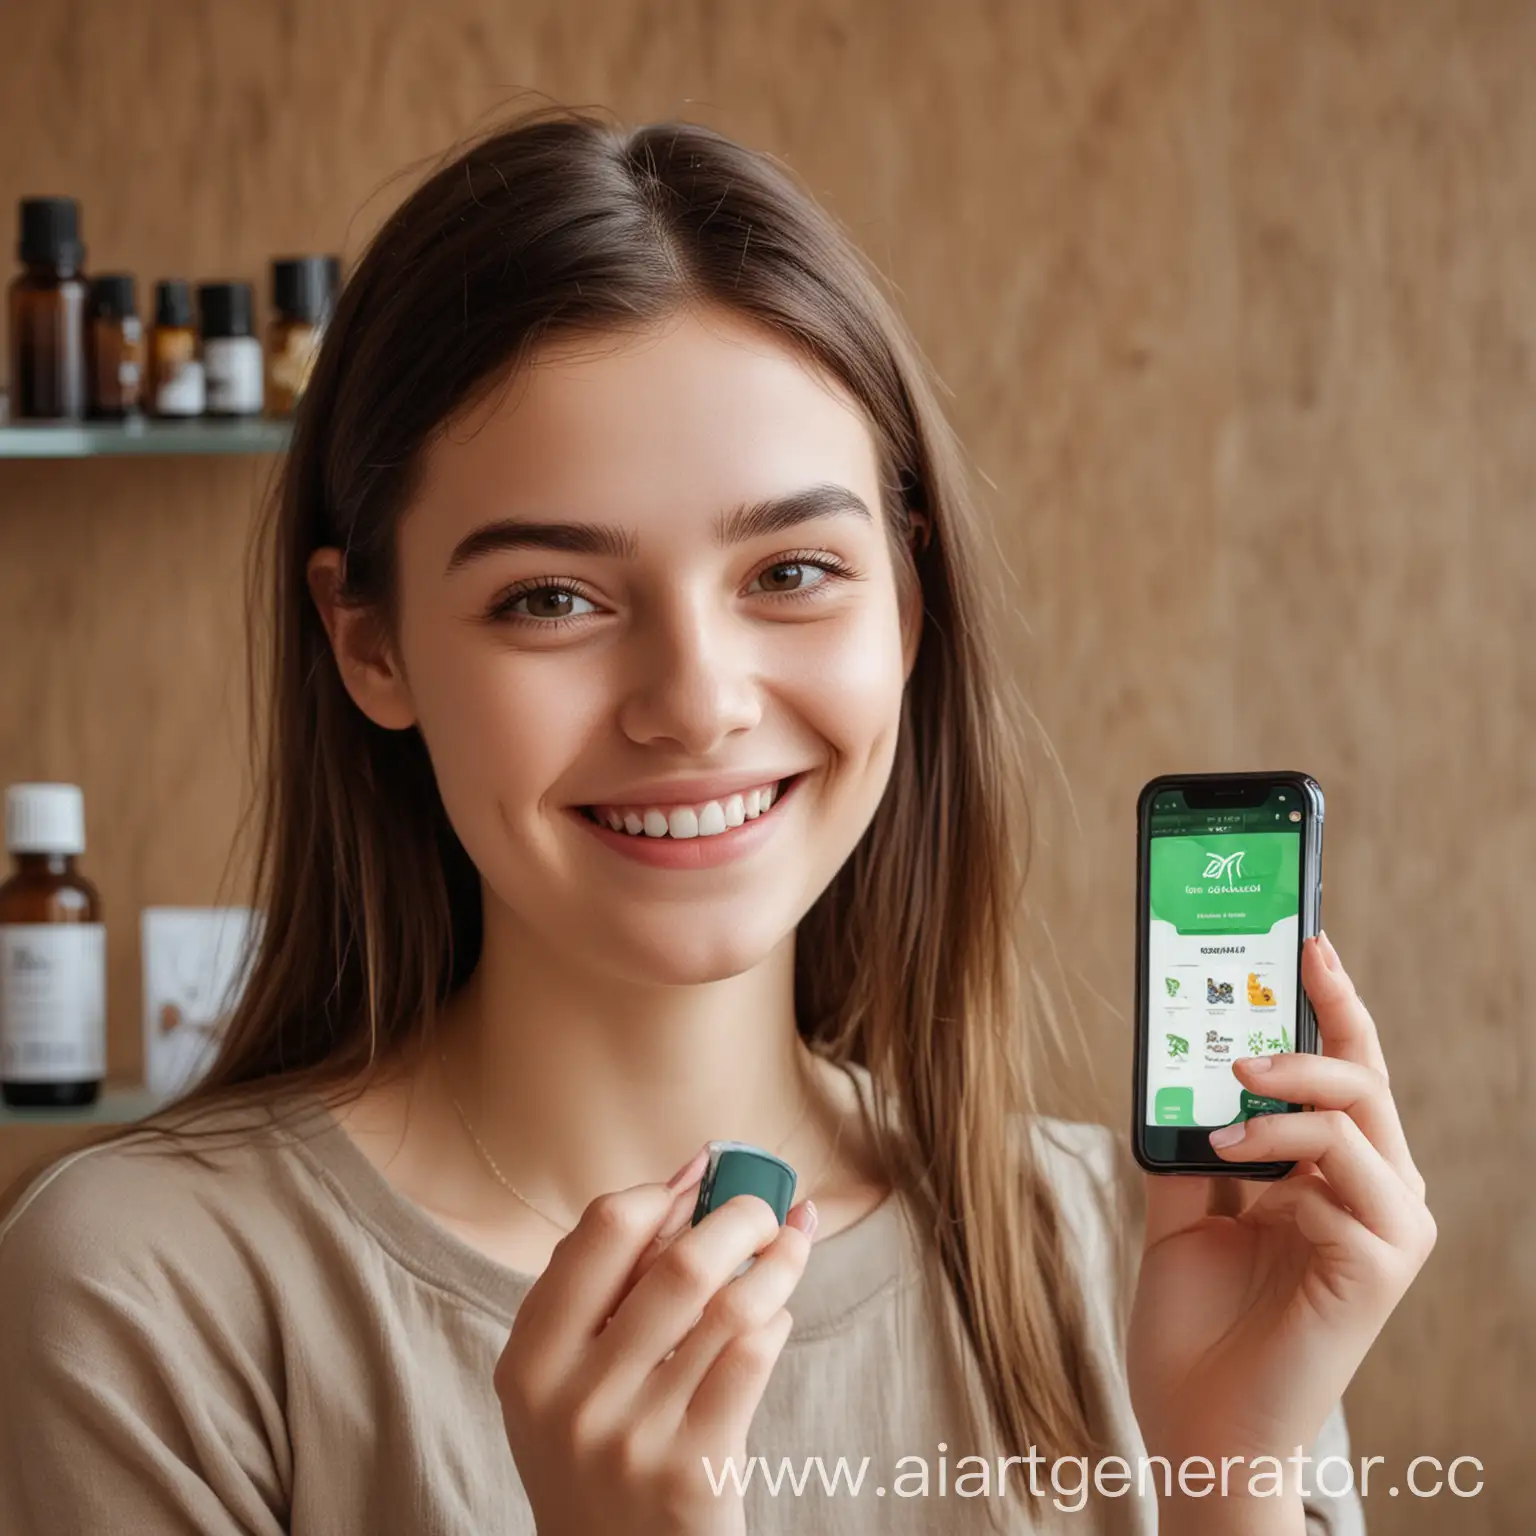 Девушка на фоне мобильного приложения, на приложения с карточками товаров эфирных масел, на вид лед 20 , улыбается